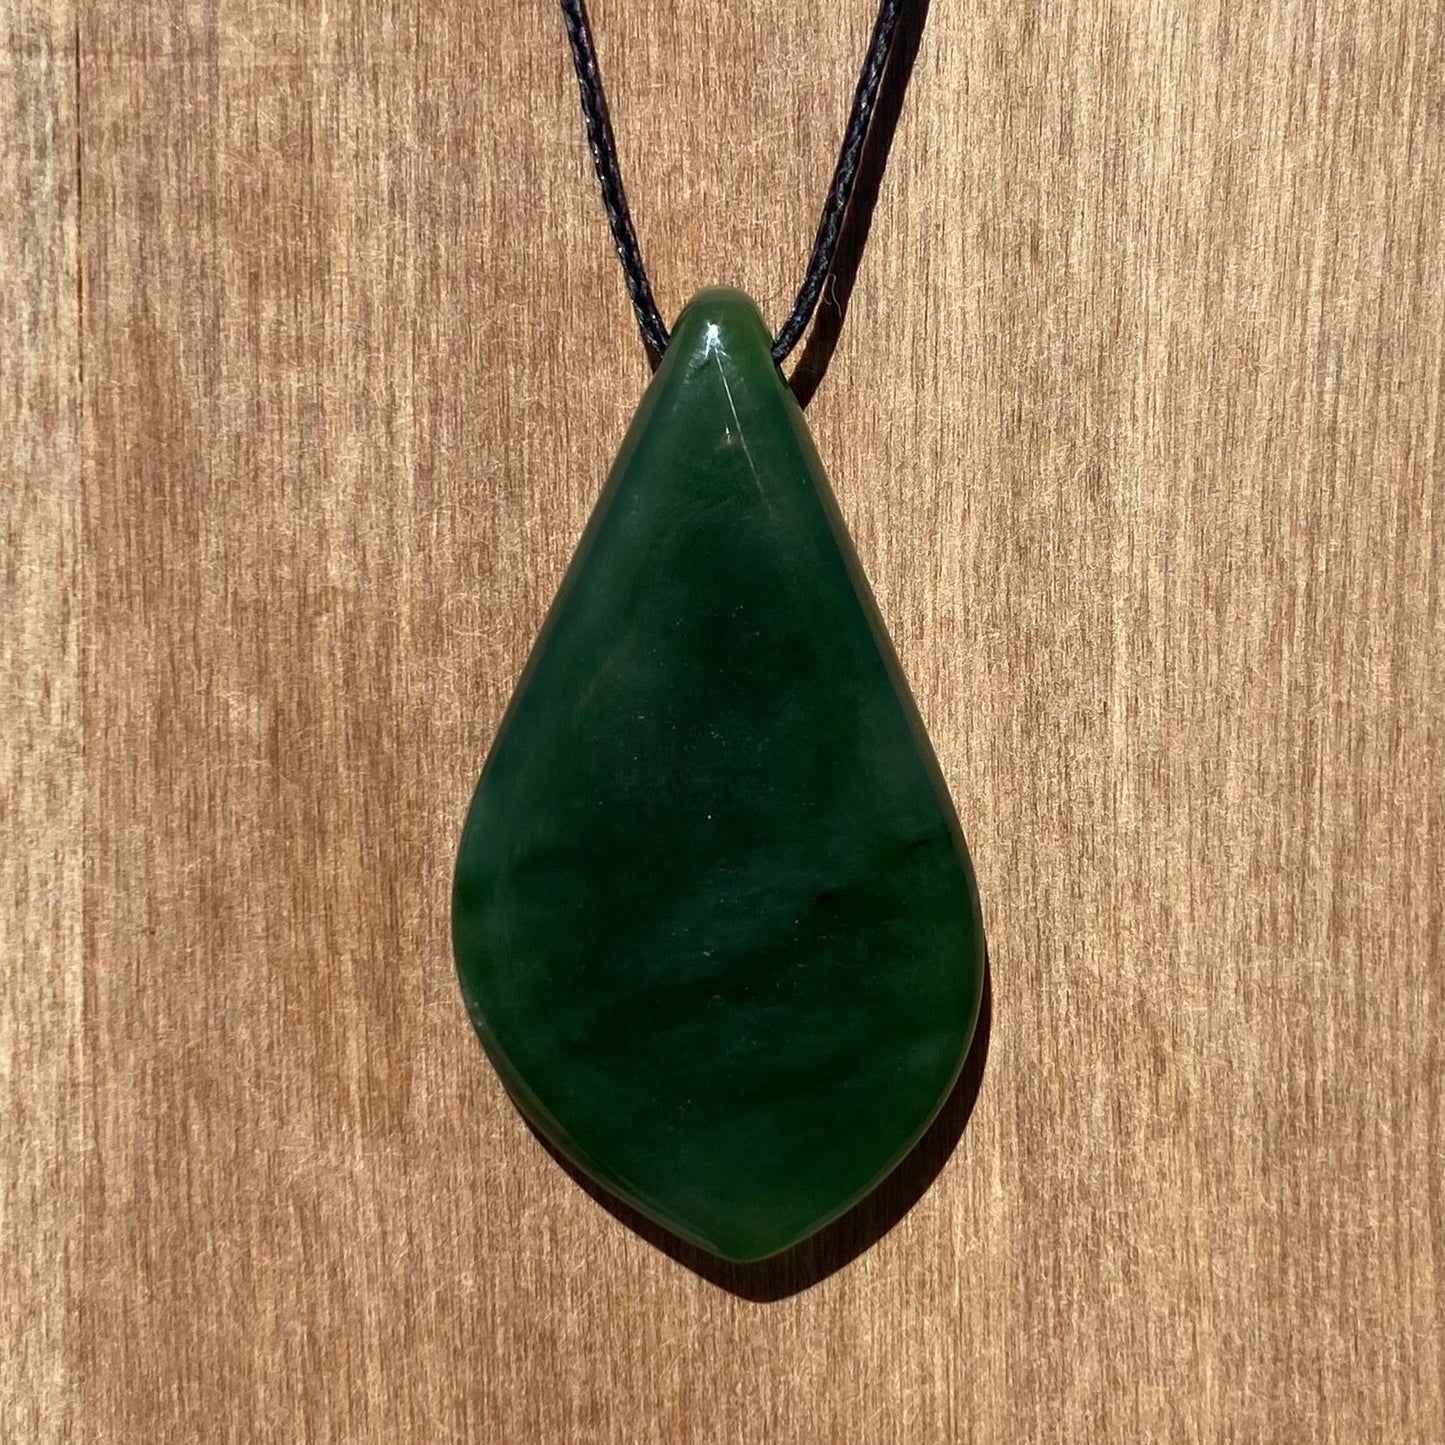 Freeform shape pendant hand-carved from New Zealand kahurangi  pounamu (greenstone). Back.